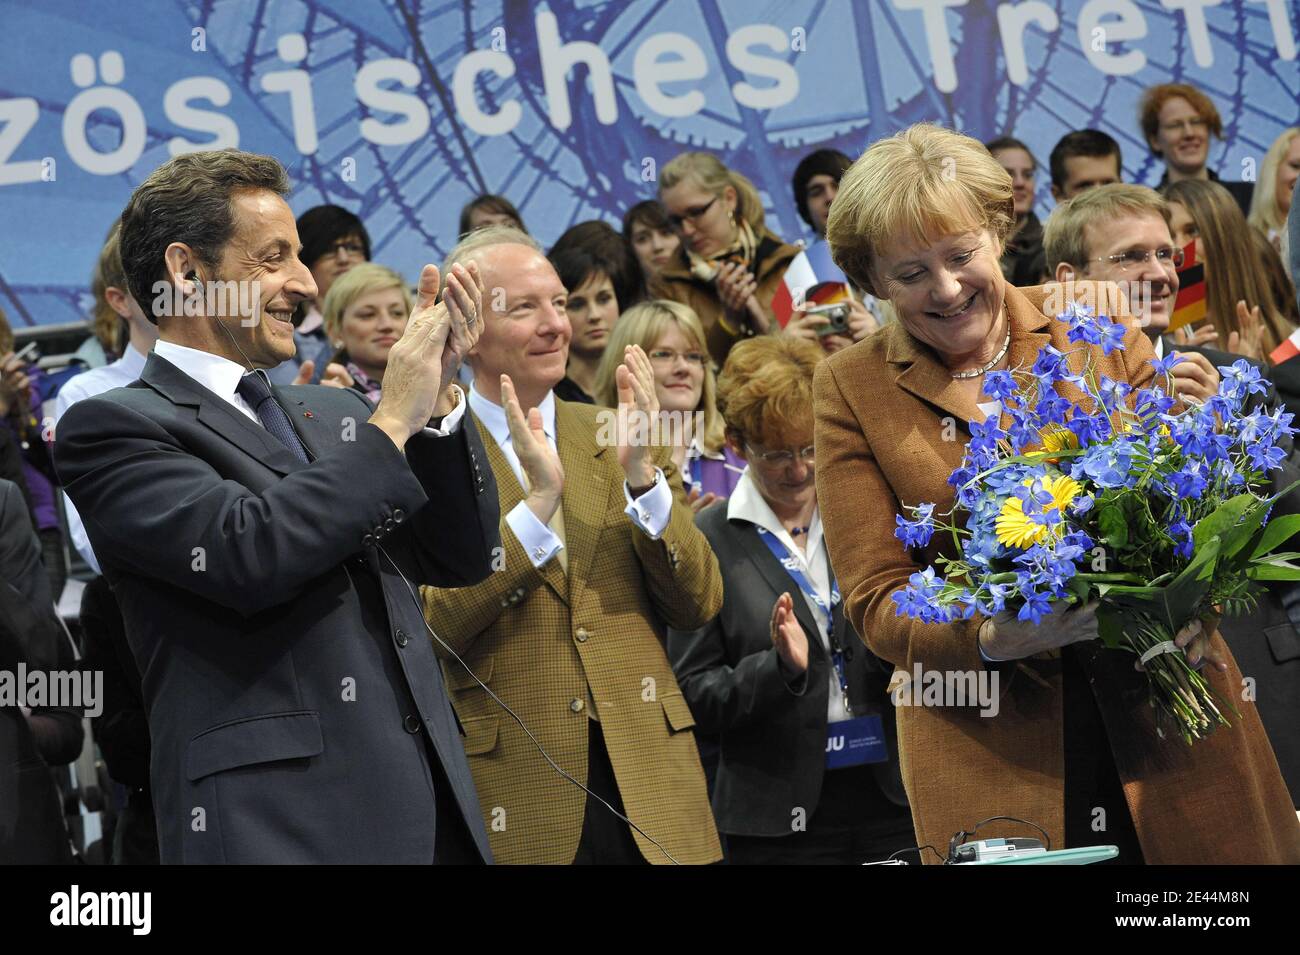 Il presidente francese Nicolas Sarkozy, il ministro del lavoro Brice Hortefeux e la cancelliera tedesca Angela Merkel hanno partecipato il 10 maggio 2009 a un raduno delle elezioni europee dell'Unione Junge (Young Union, l'organizzazione giovanile dei cristiano-democratici tedeschi) presso il Sony Centre di Berlino in Germania. L'Unione Junge ha tenuto il rally come parte di un incontro di amicizia tedesco-francese. gli stati membri dell'Unione europea terranno le elezioni per il parlamento europeo in giugno. Foto di Elodie Gregoire/ABACAPRESS.COM Foto Stock